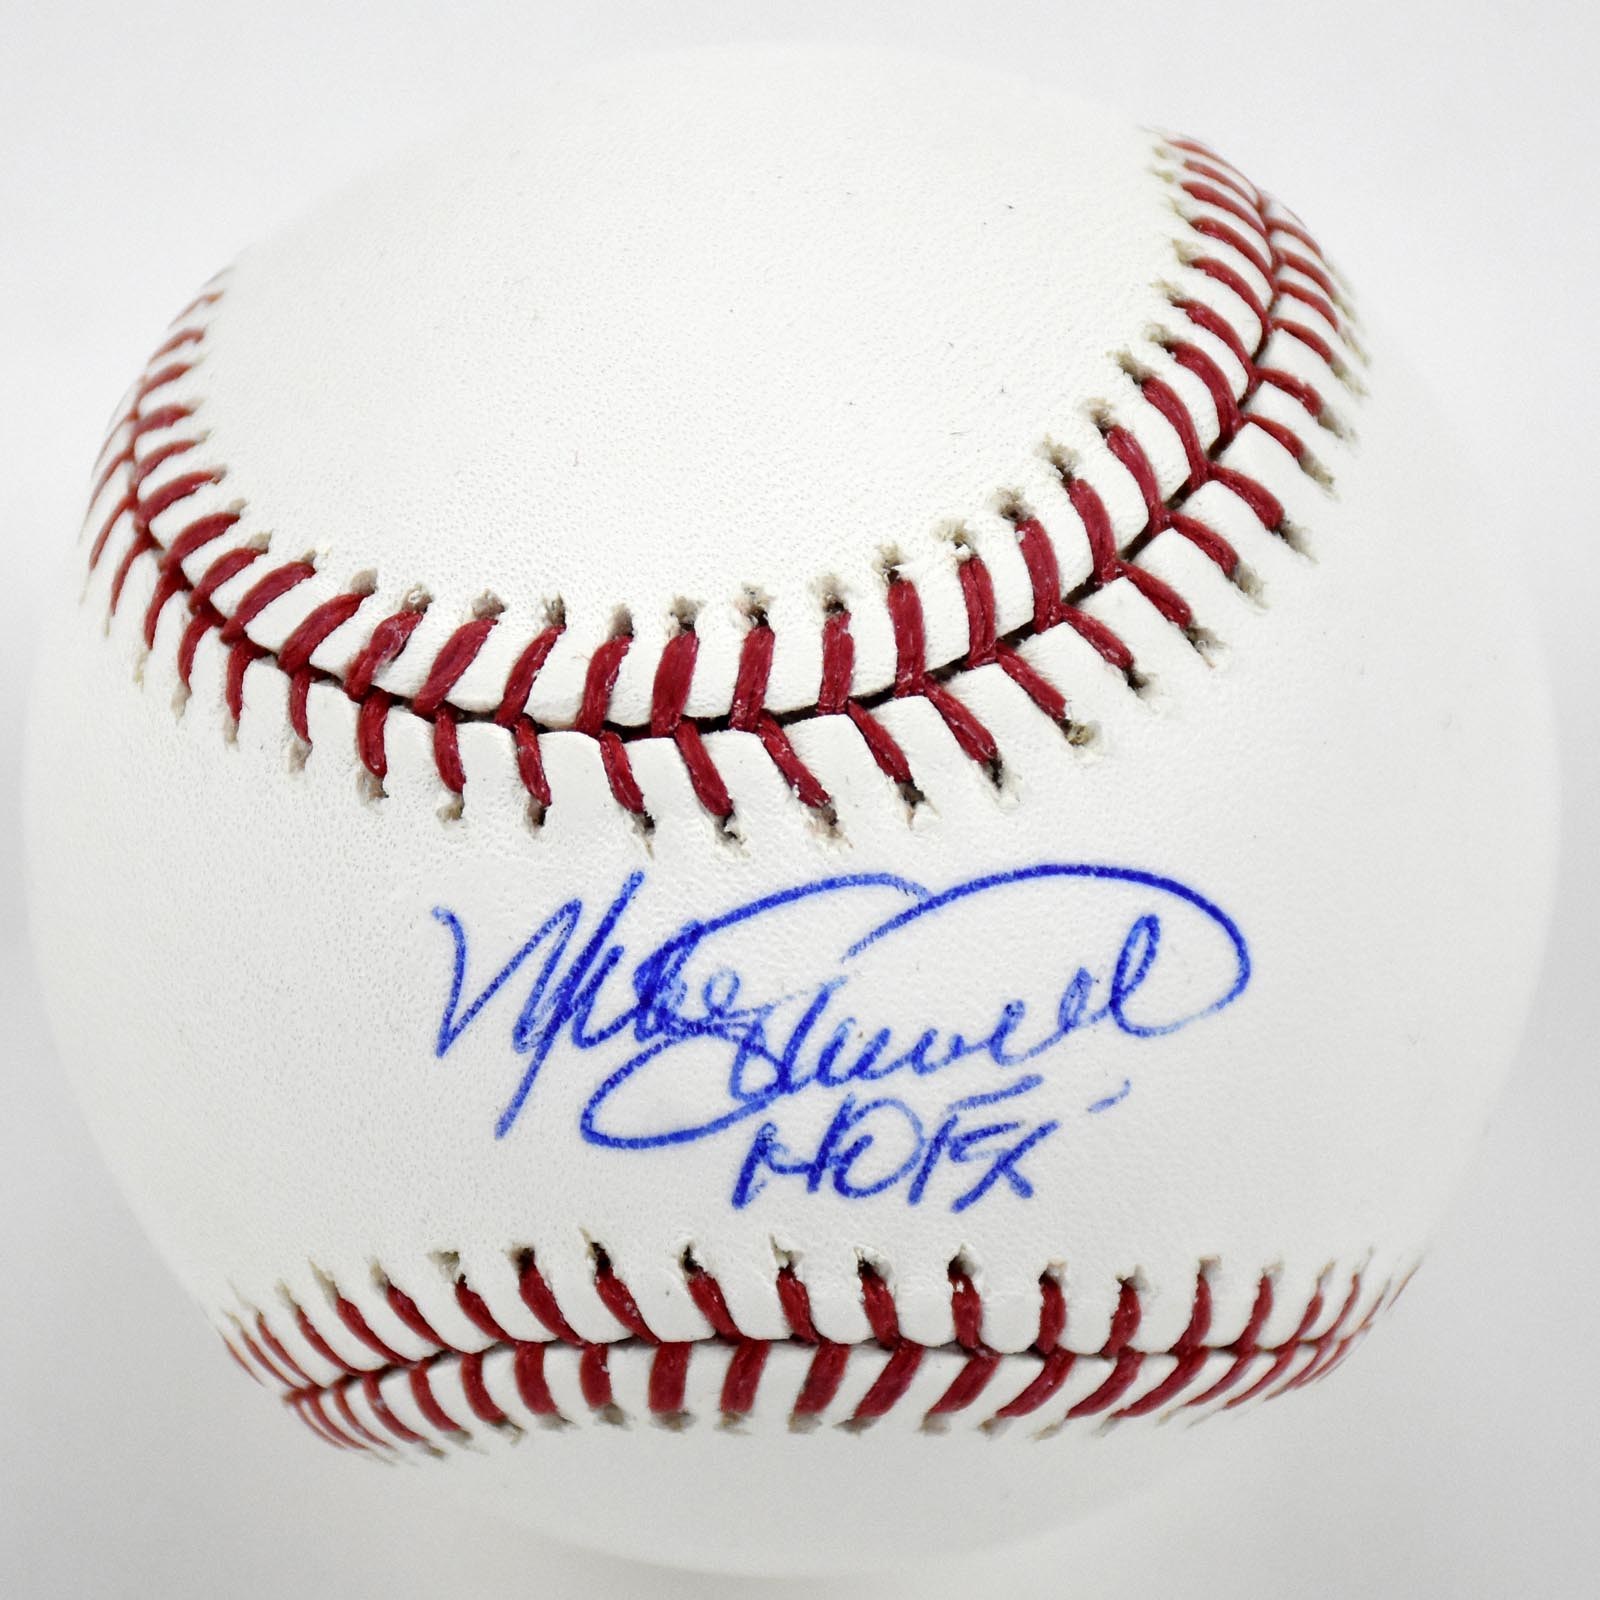 - Mike Schmidt "HOF 95" Single Signed Baseball (PSA)